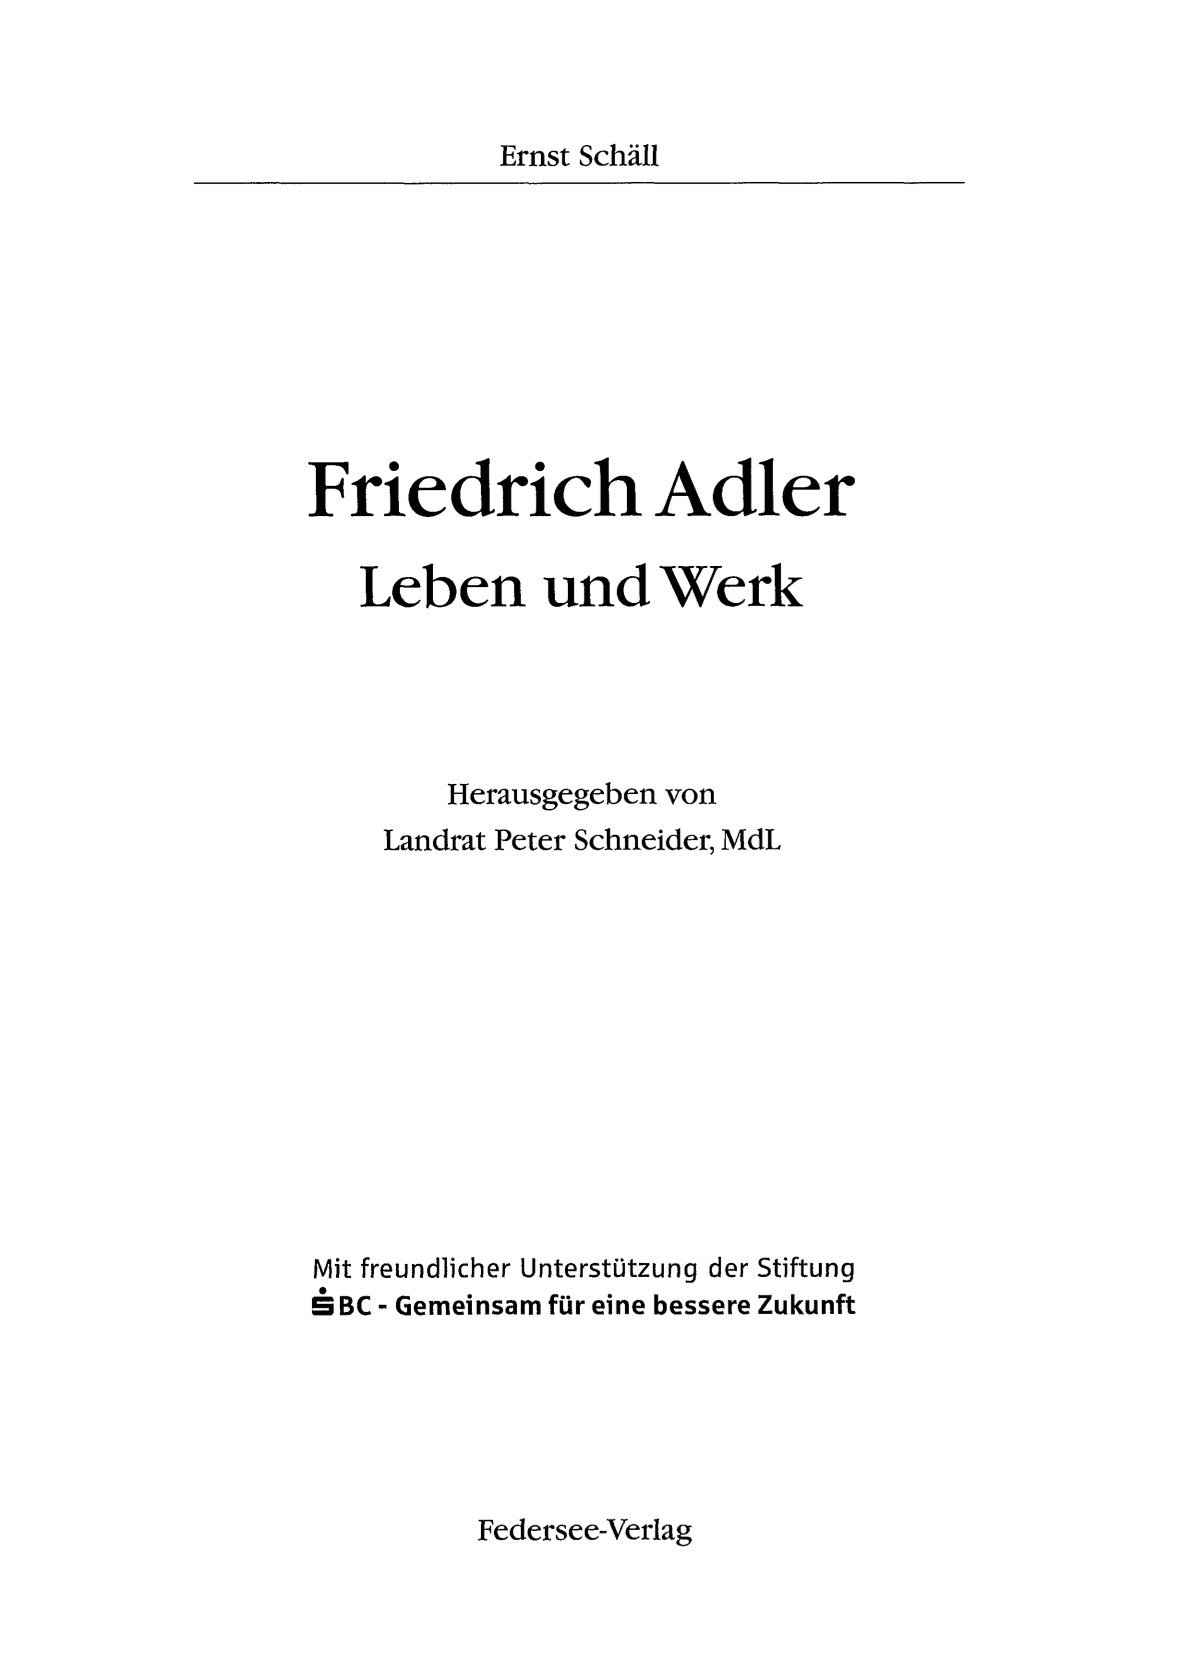 Friedrich Adler - Leben und Werk